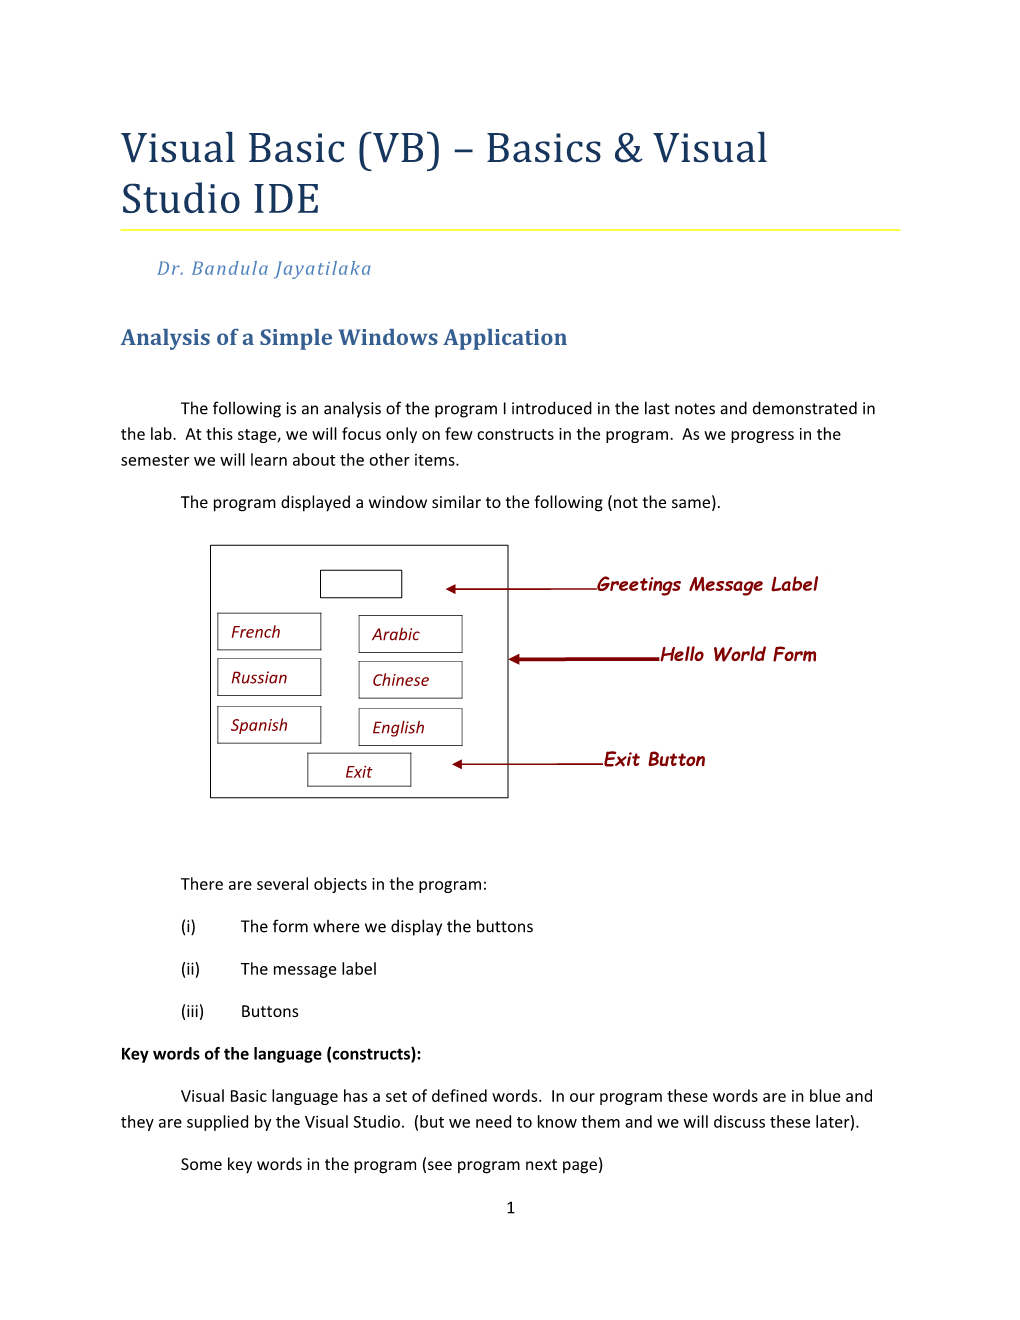 Visual Basic (VB) Basics & Visual Studio IDE